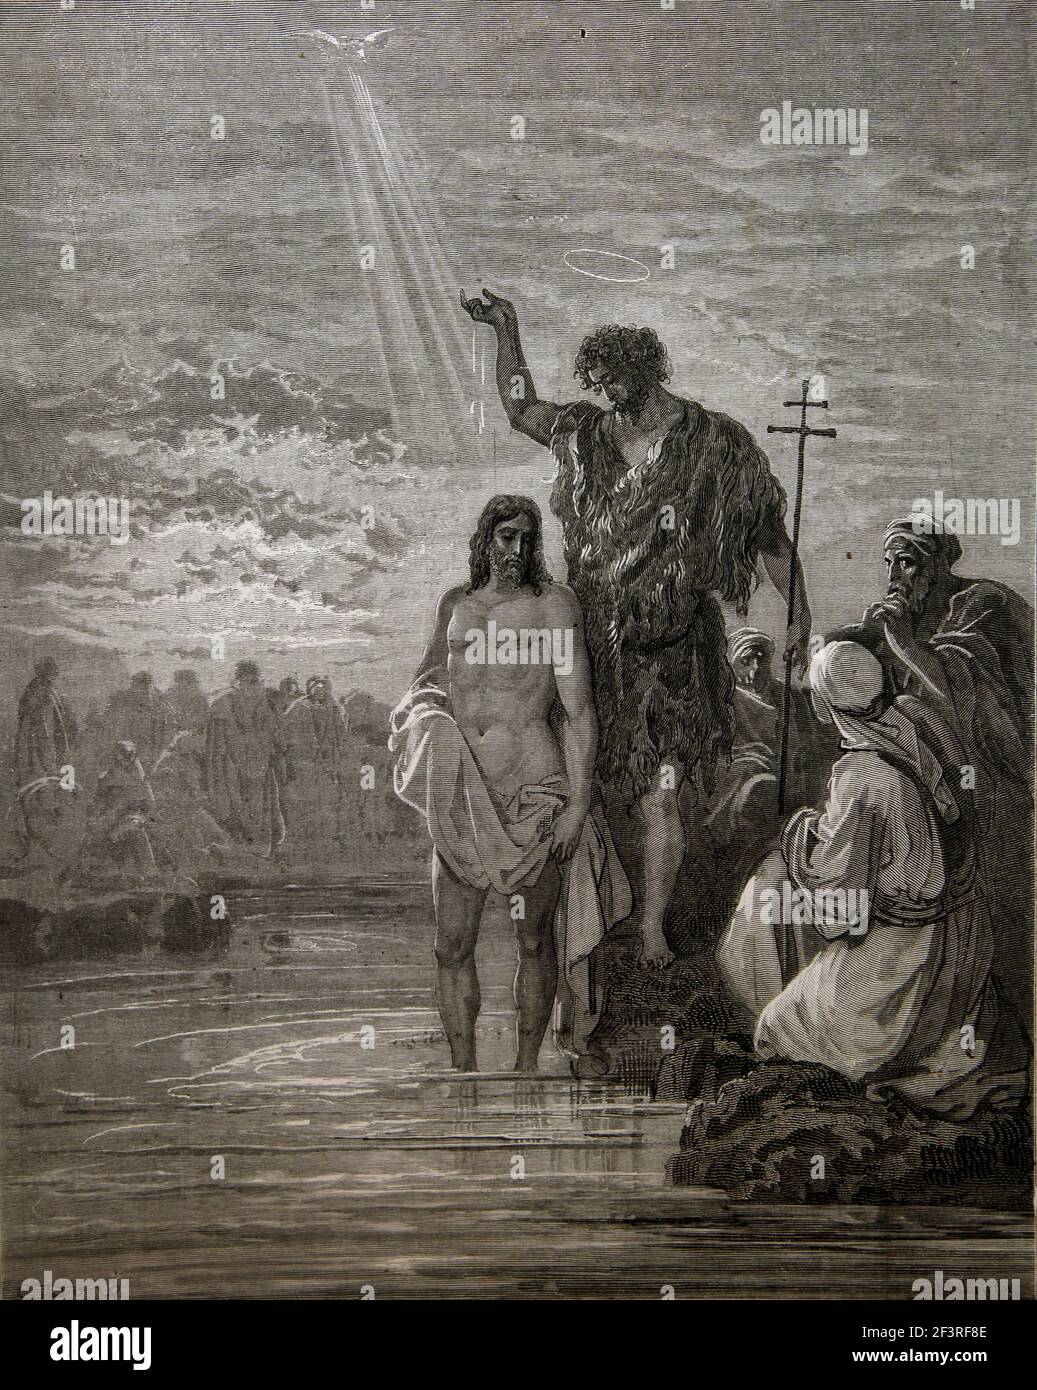 Storie bibliche - Illustrazione di 'il Battesimo di Gesù' da Giovanni Battista dal Mark1:9-11 del nuovo Testamento Foto Stock